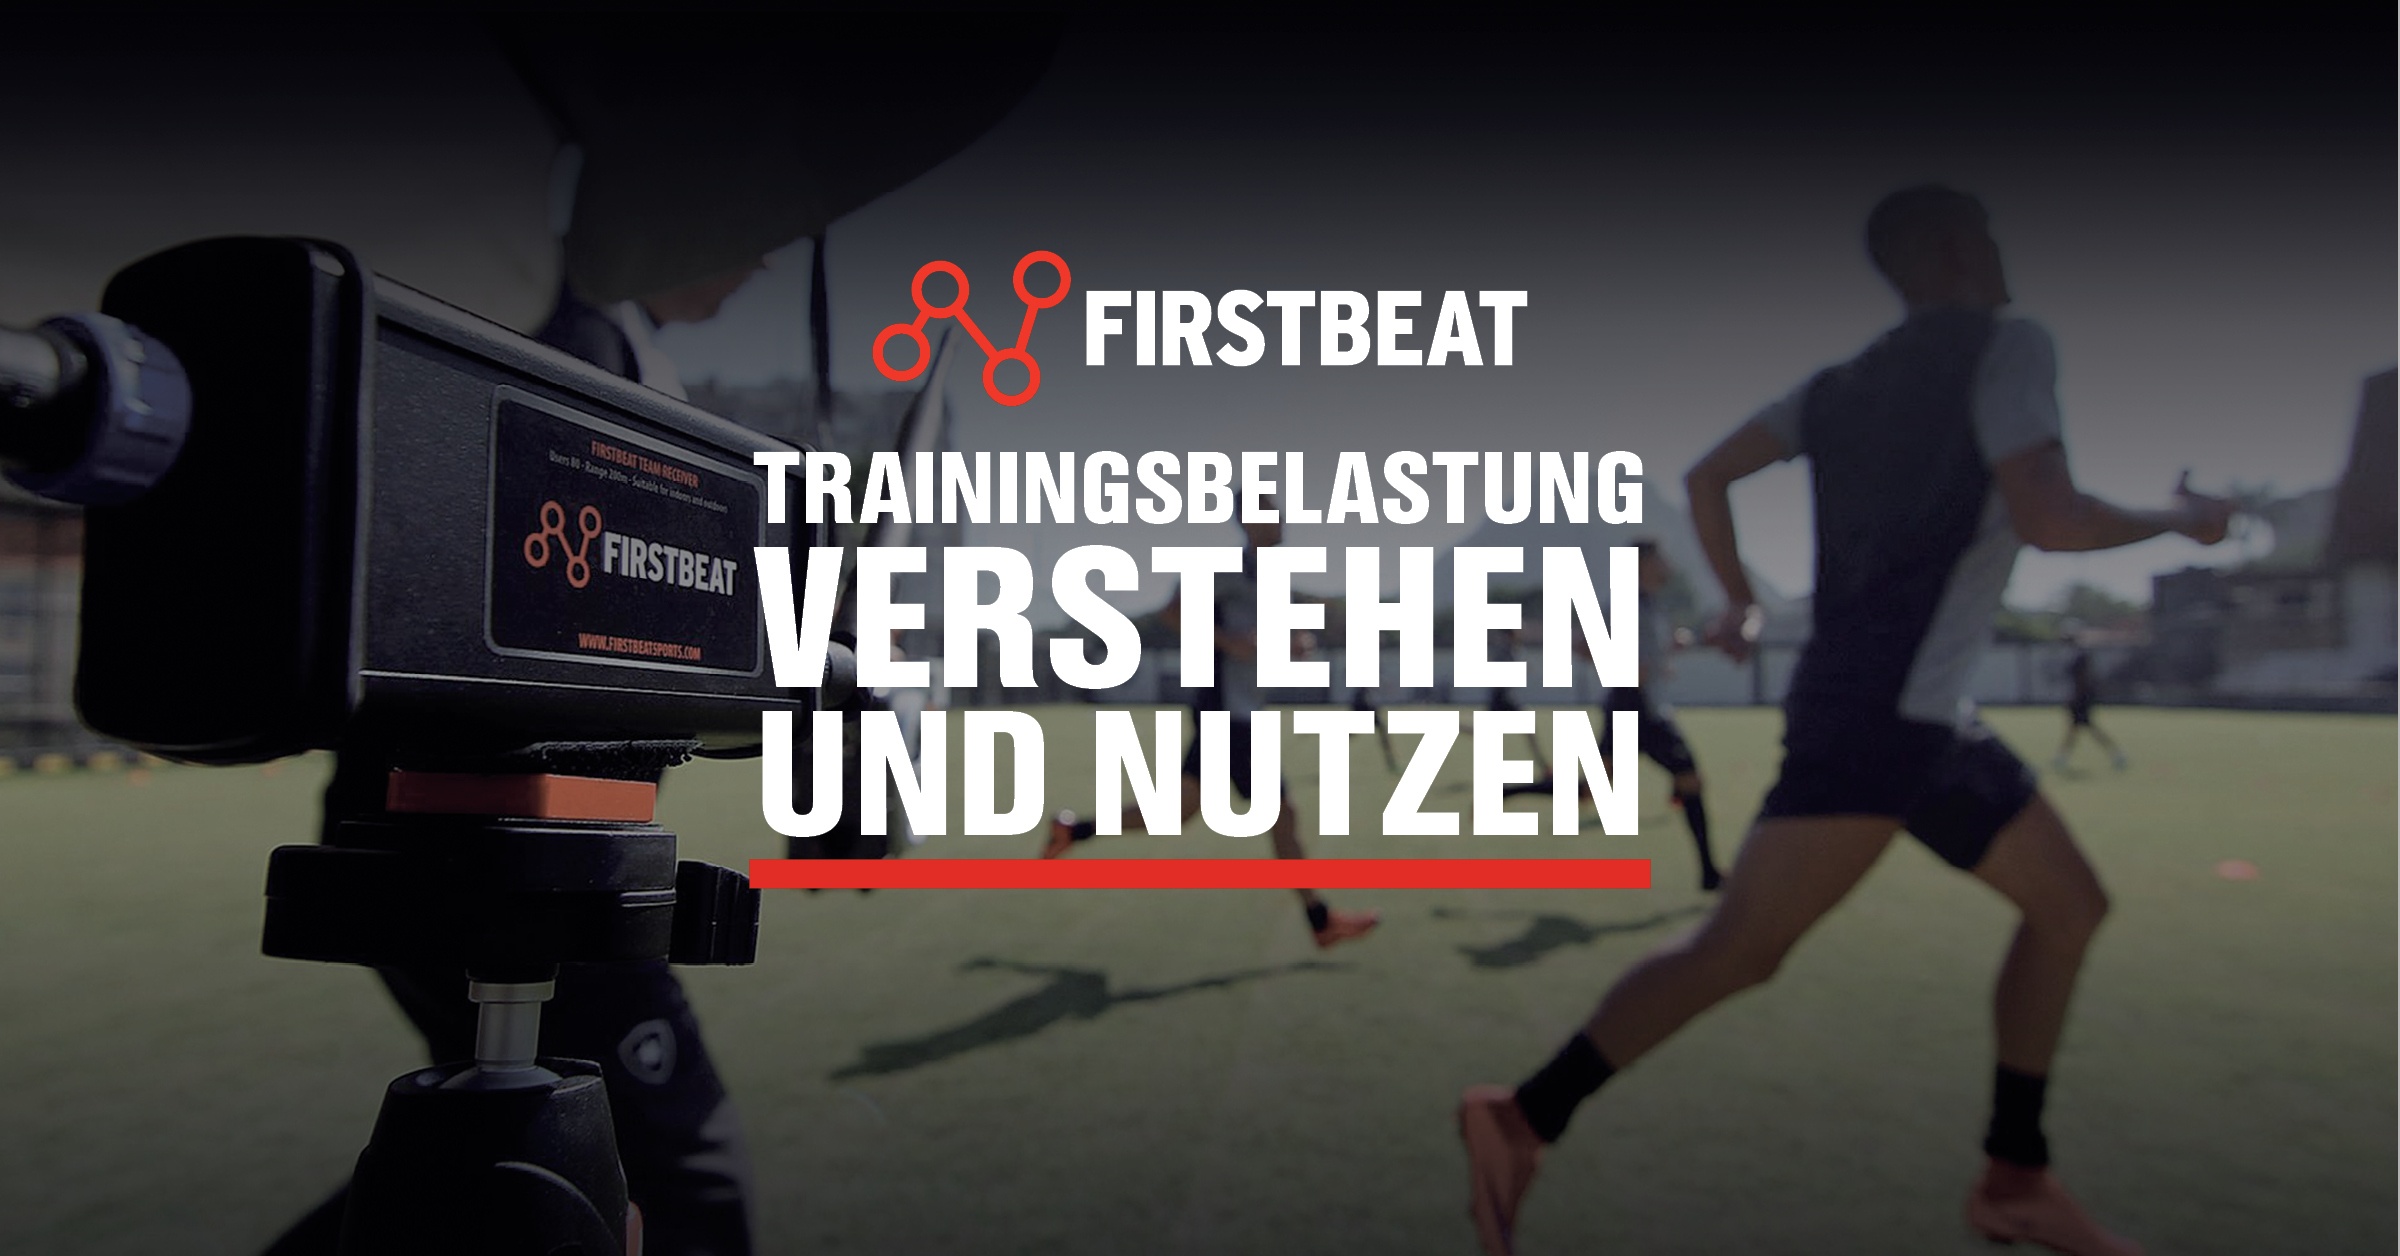 Firstbeat Sports Guide Trainingsbelastung Verstehen Und Nutzen